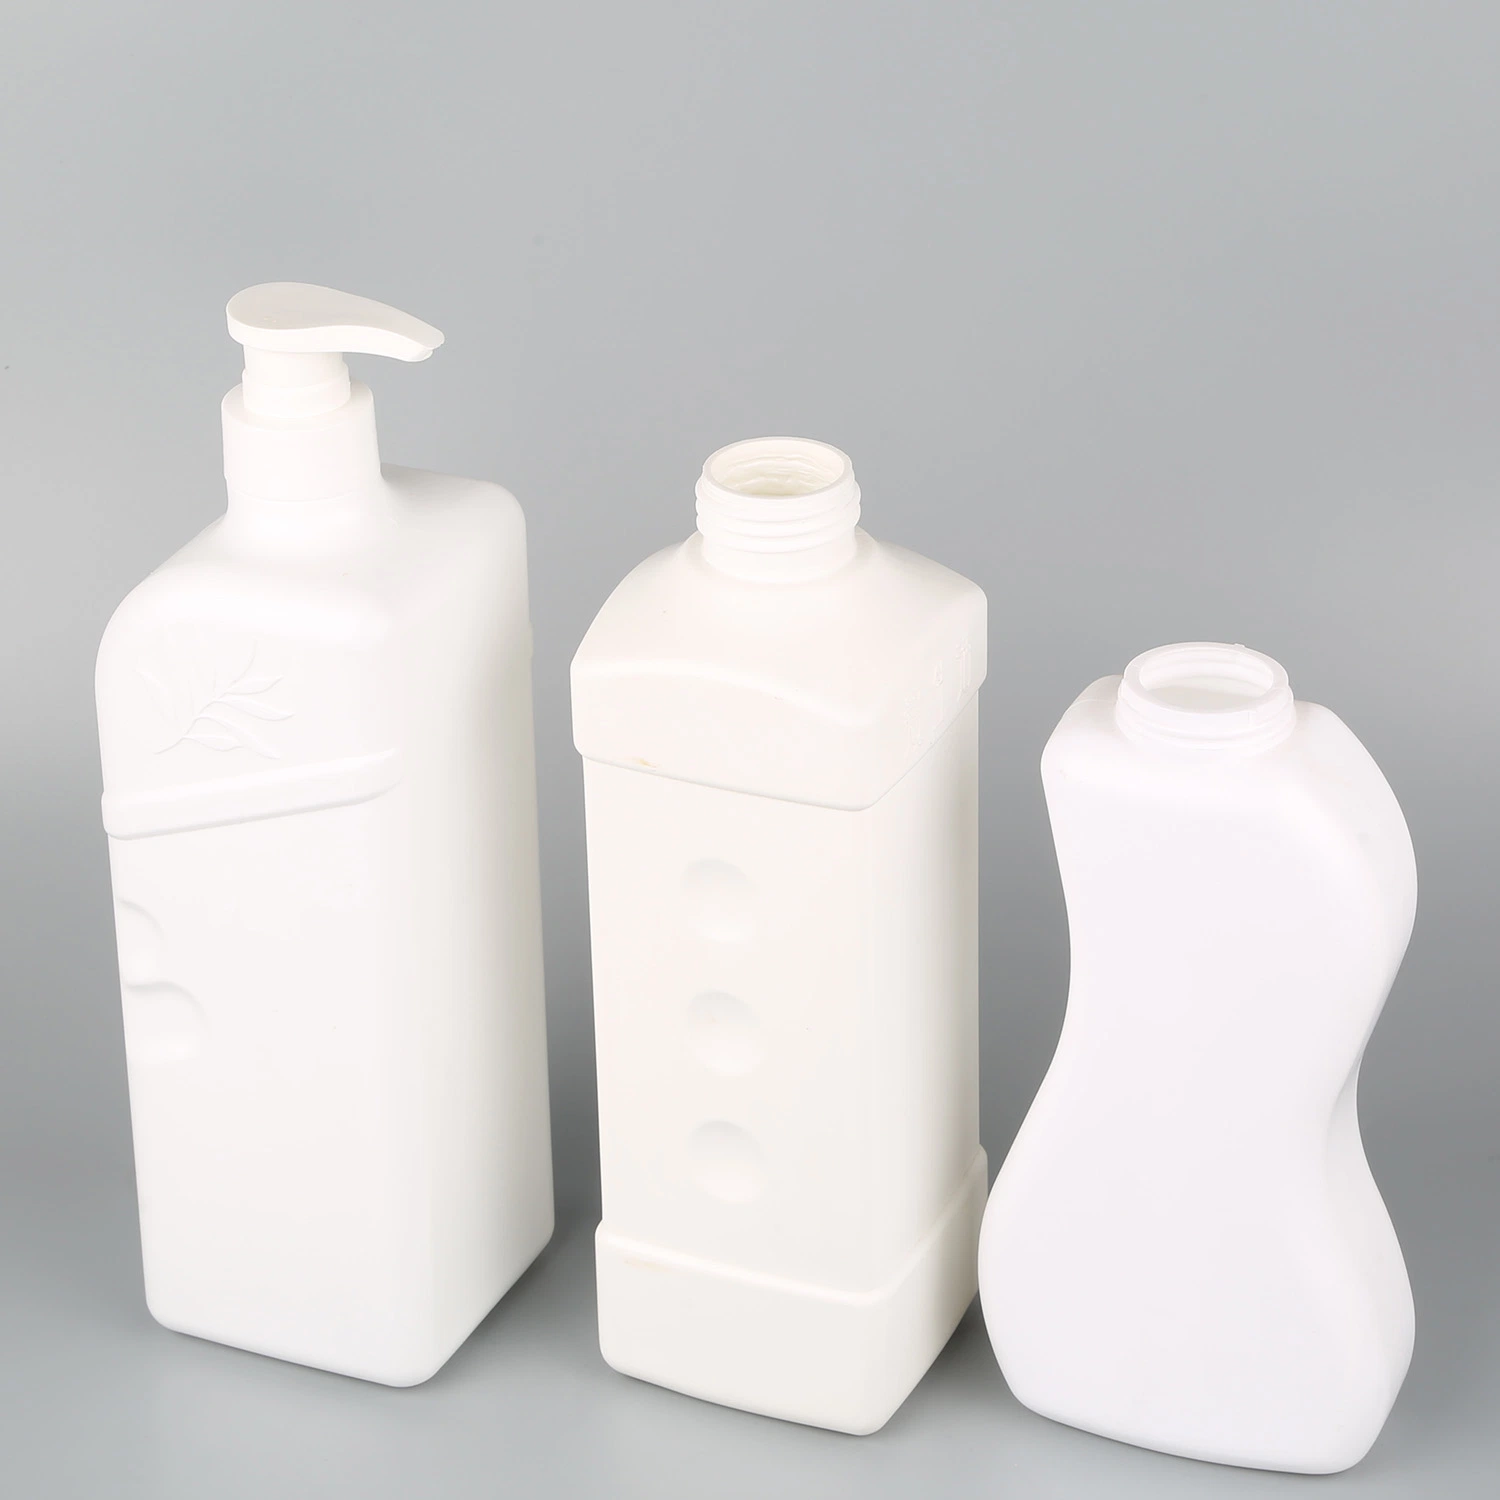 Tous les jours de haute qualité des produits chimiques personnalisé/couleur blanc pur des bouteilles en PET